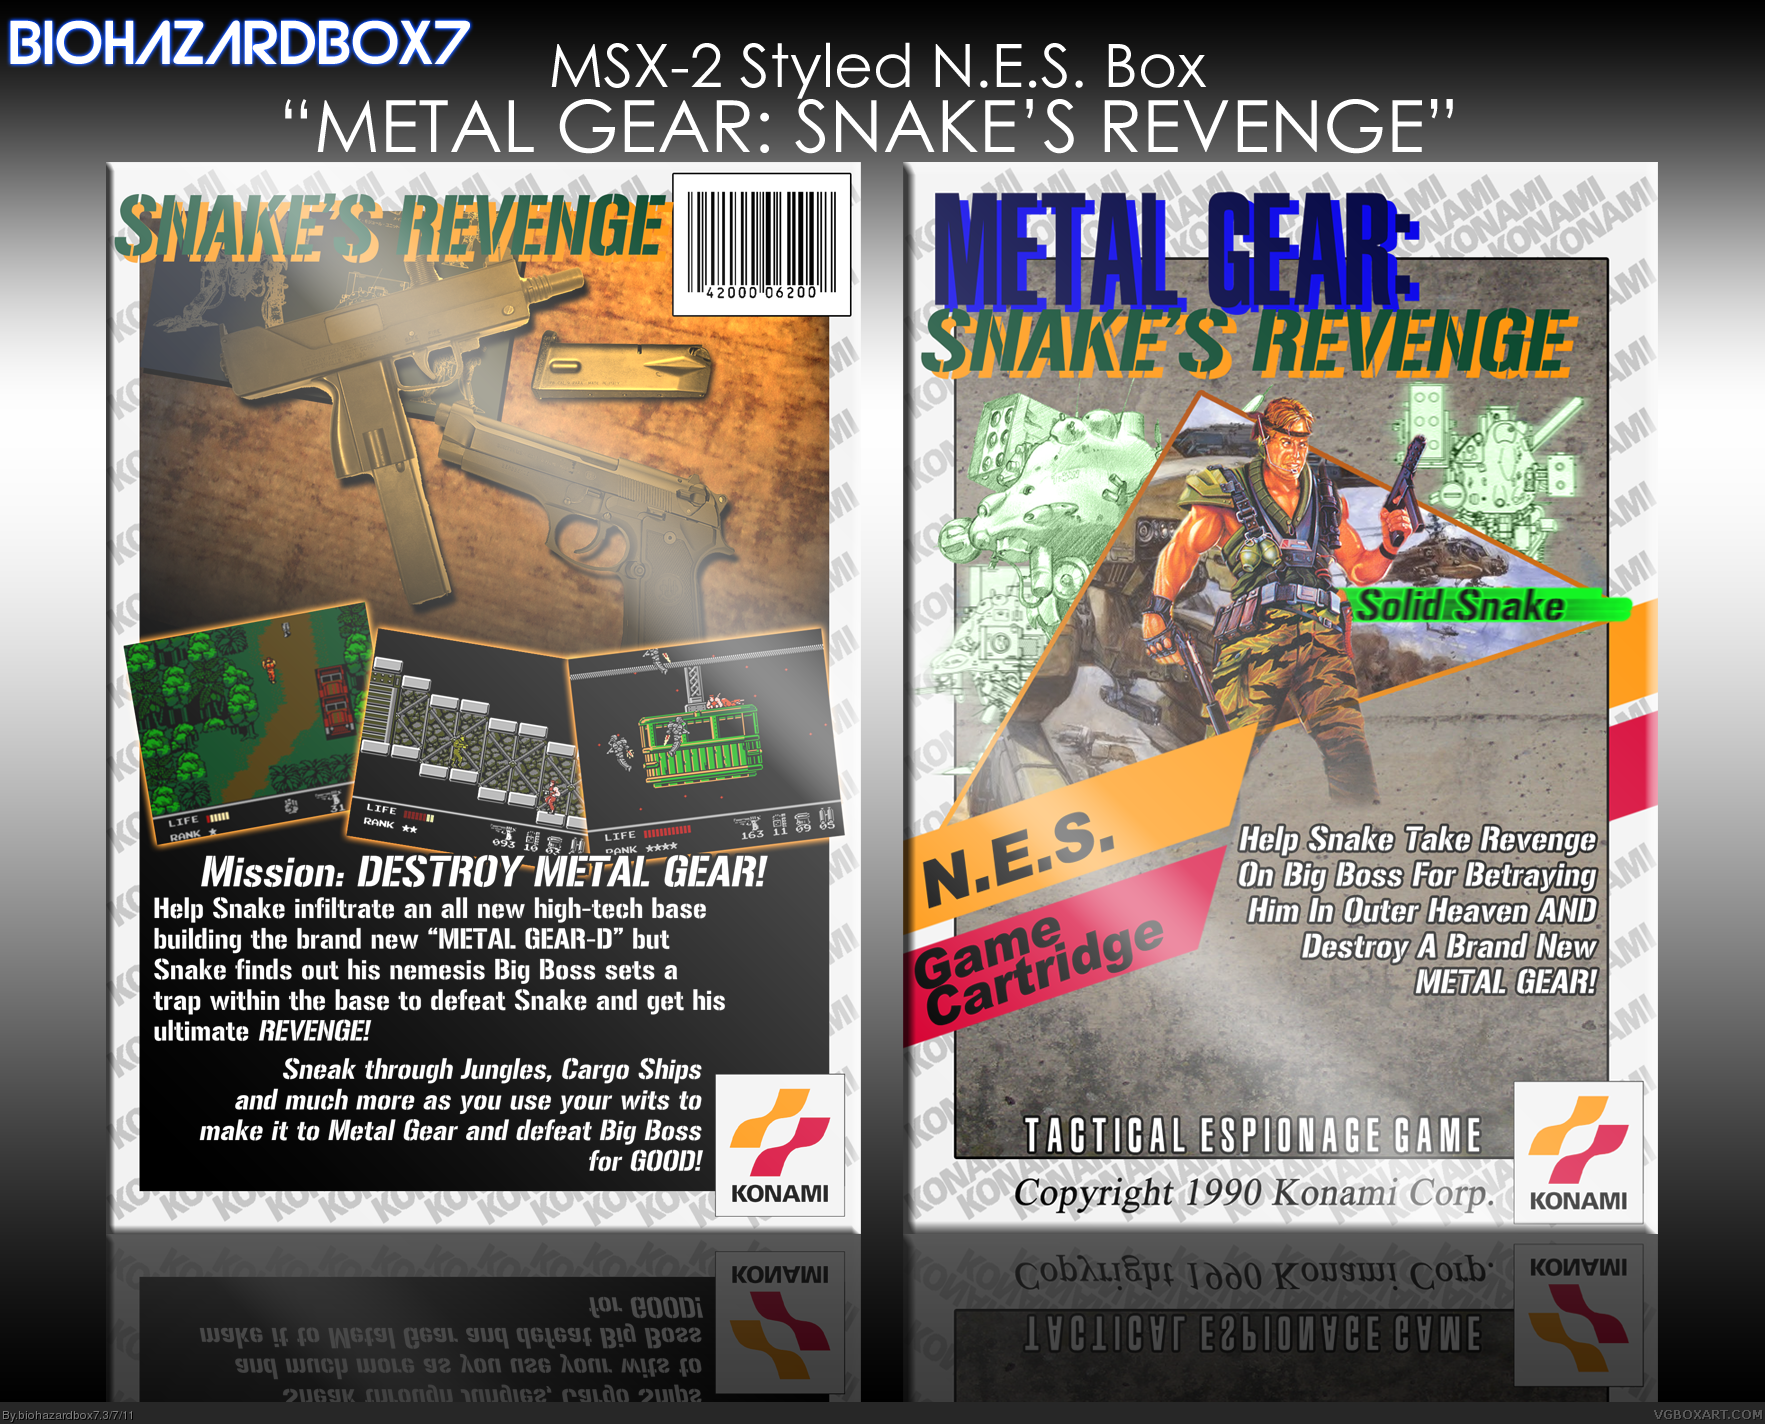 Metal Gear: Snake's Revenge box cover